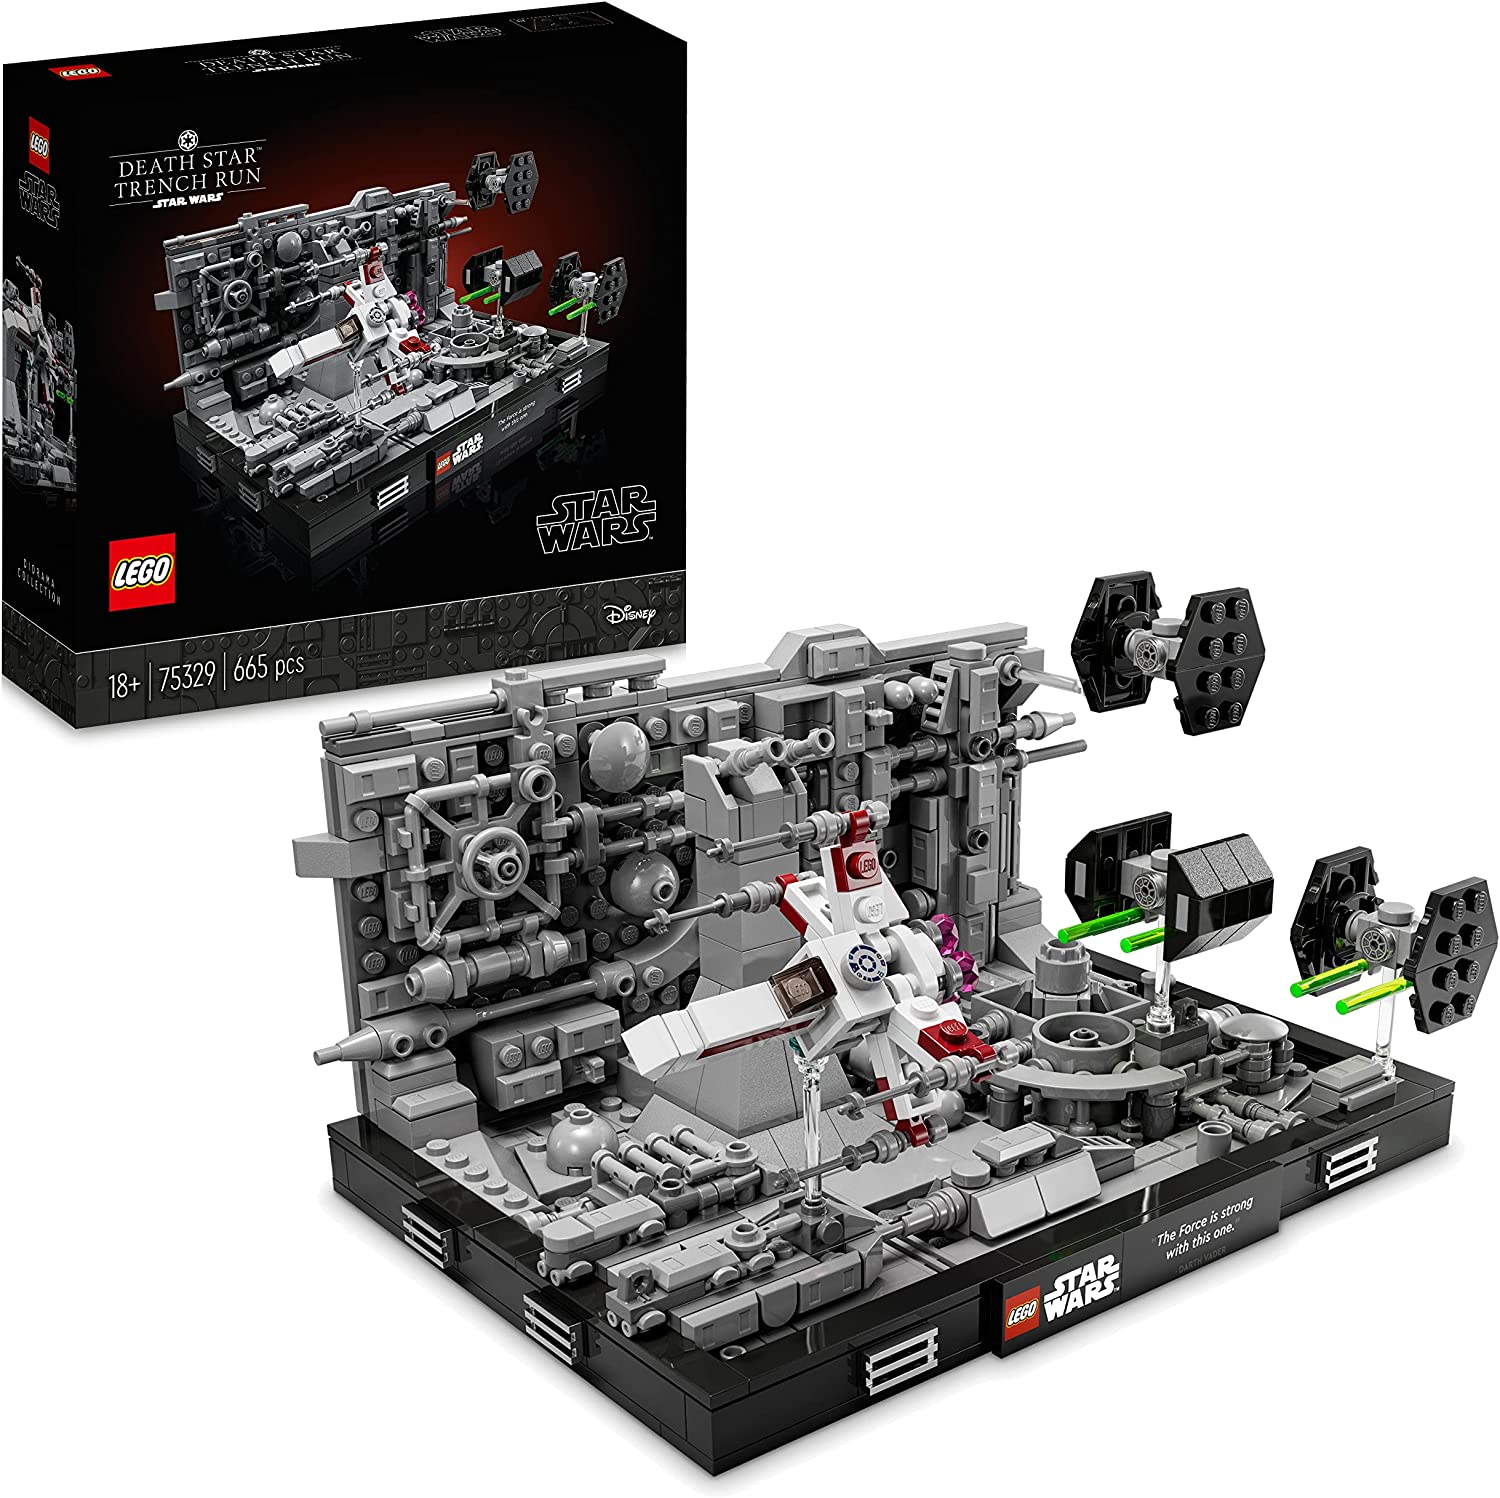  LEGO 75329 Star Wars Death Star Trench Run Diorama Set, baubares Modell für Erwachsene mit Luke Skywalkers X-Win